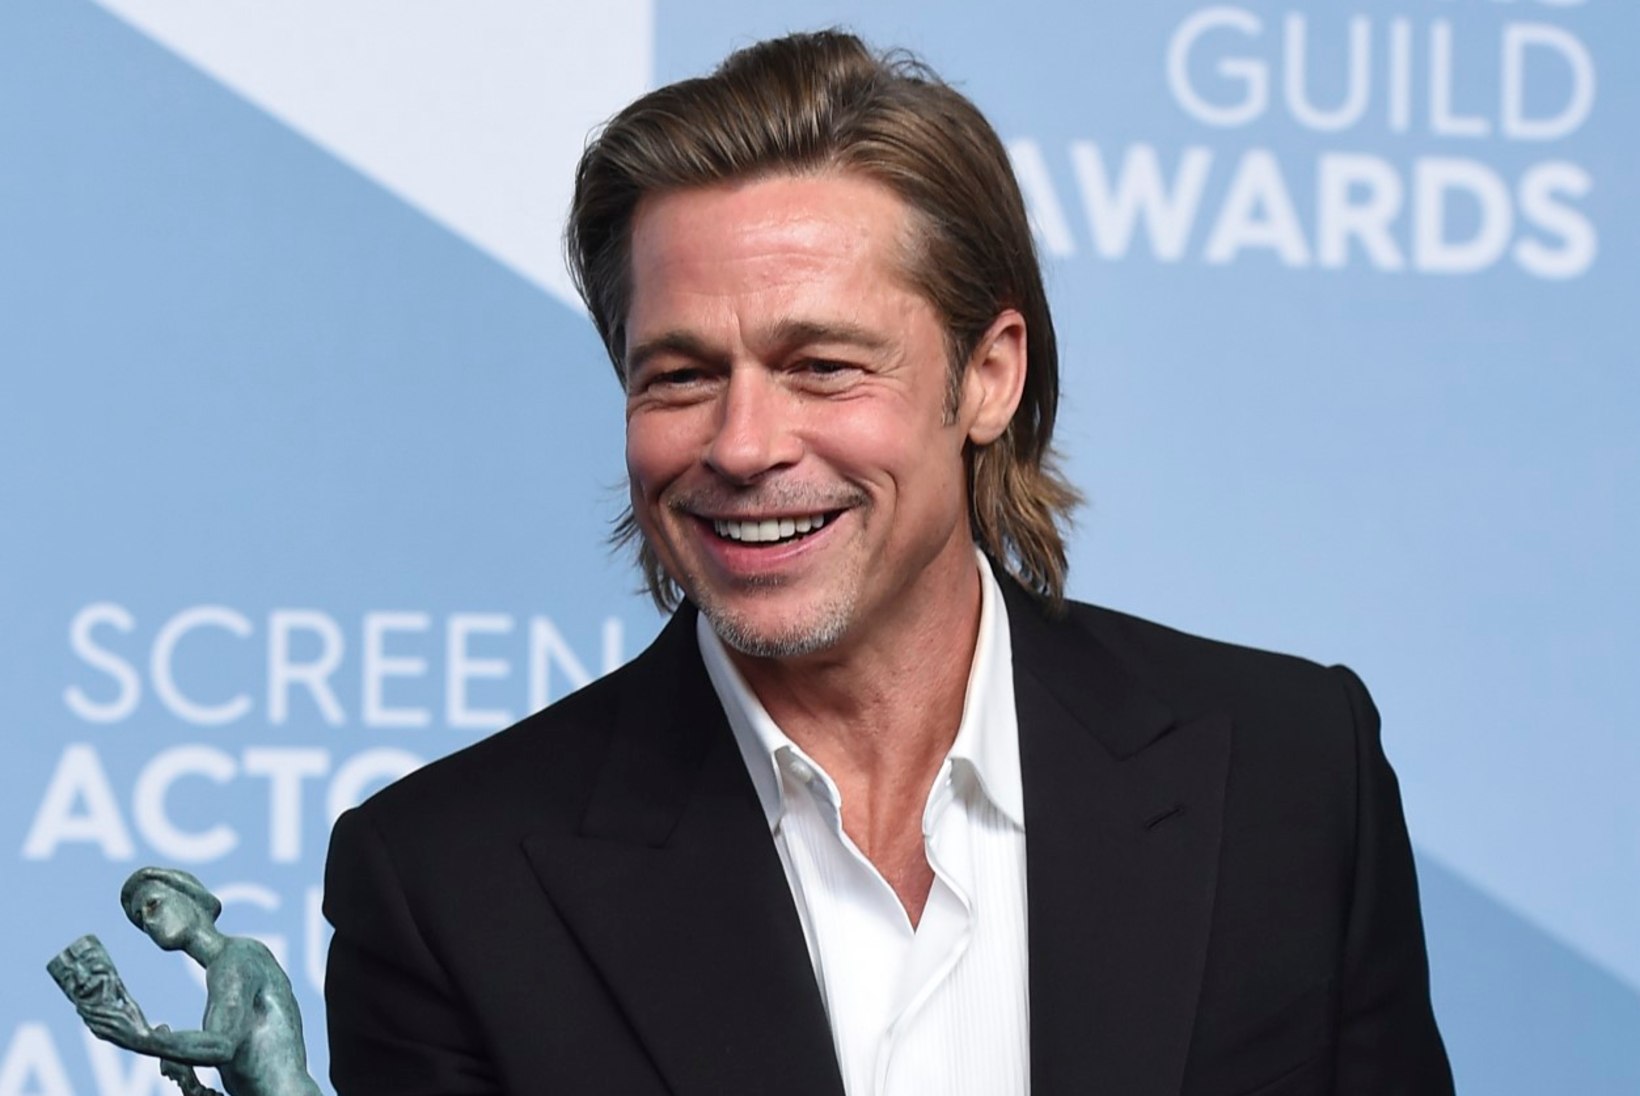 Brad Pitt pettis pahaaimamatult naiselt abielujutuga hiigelsumma välja?